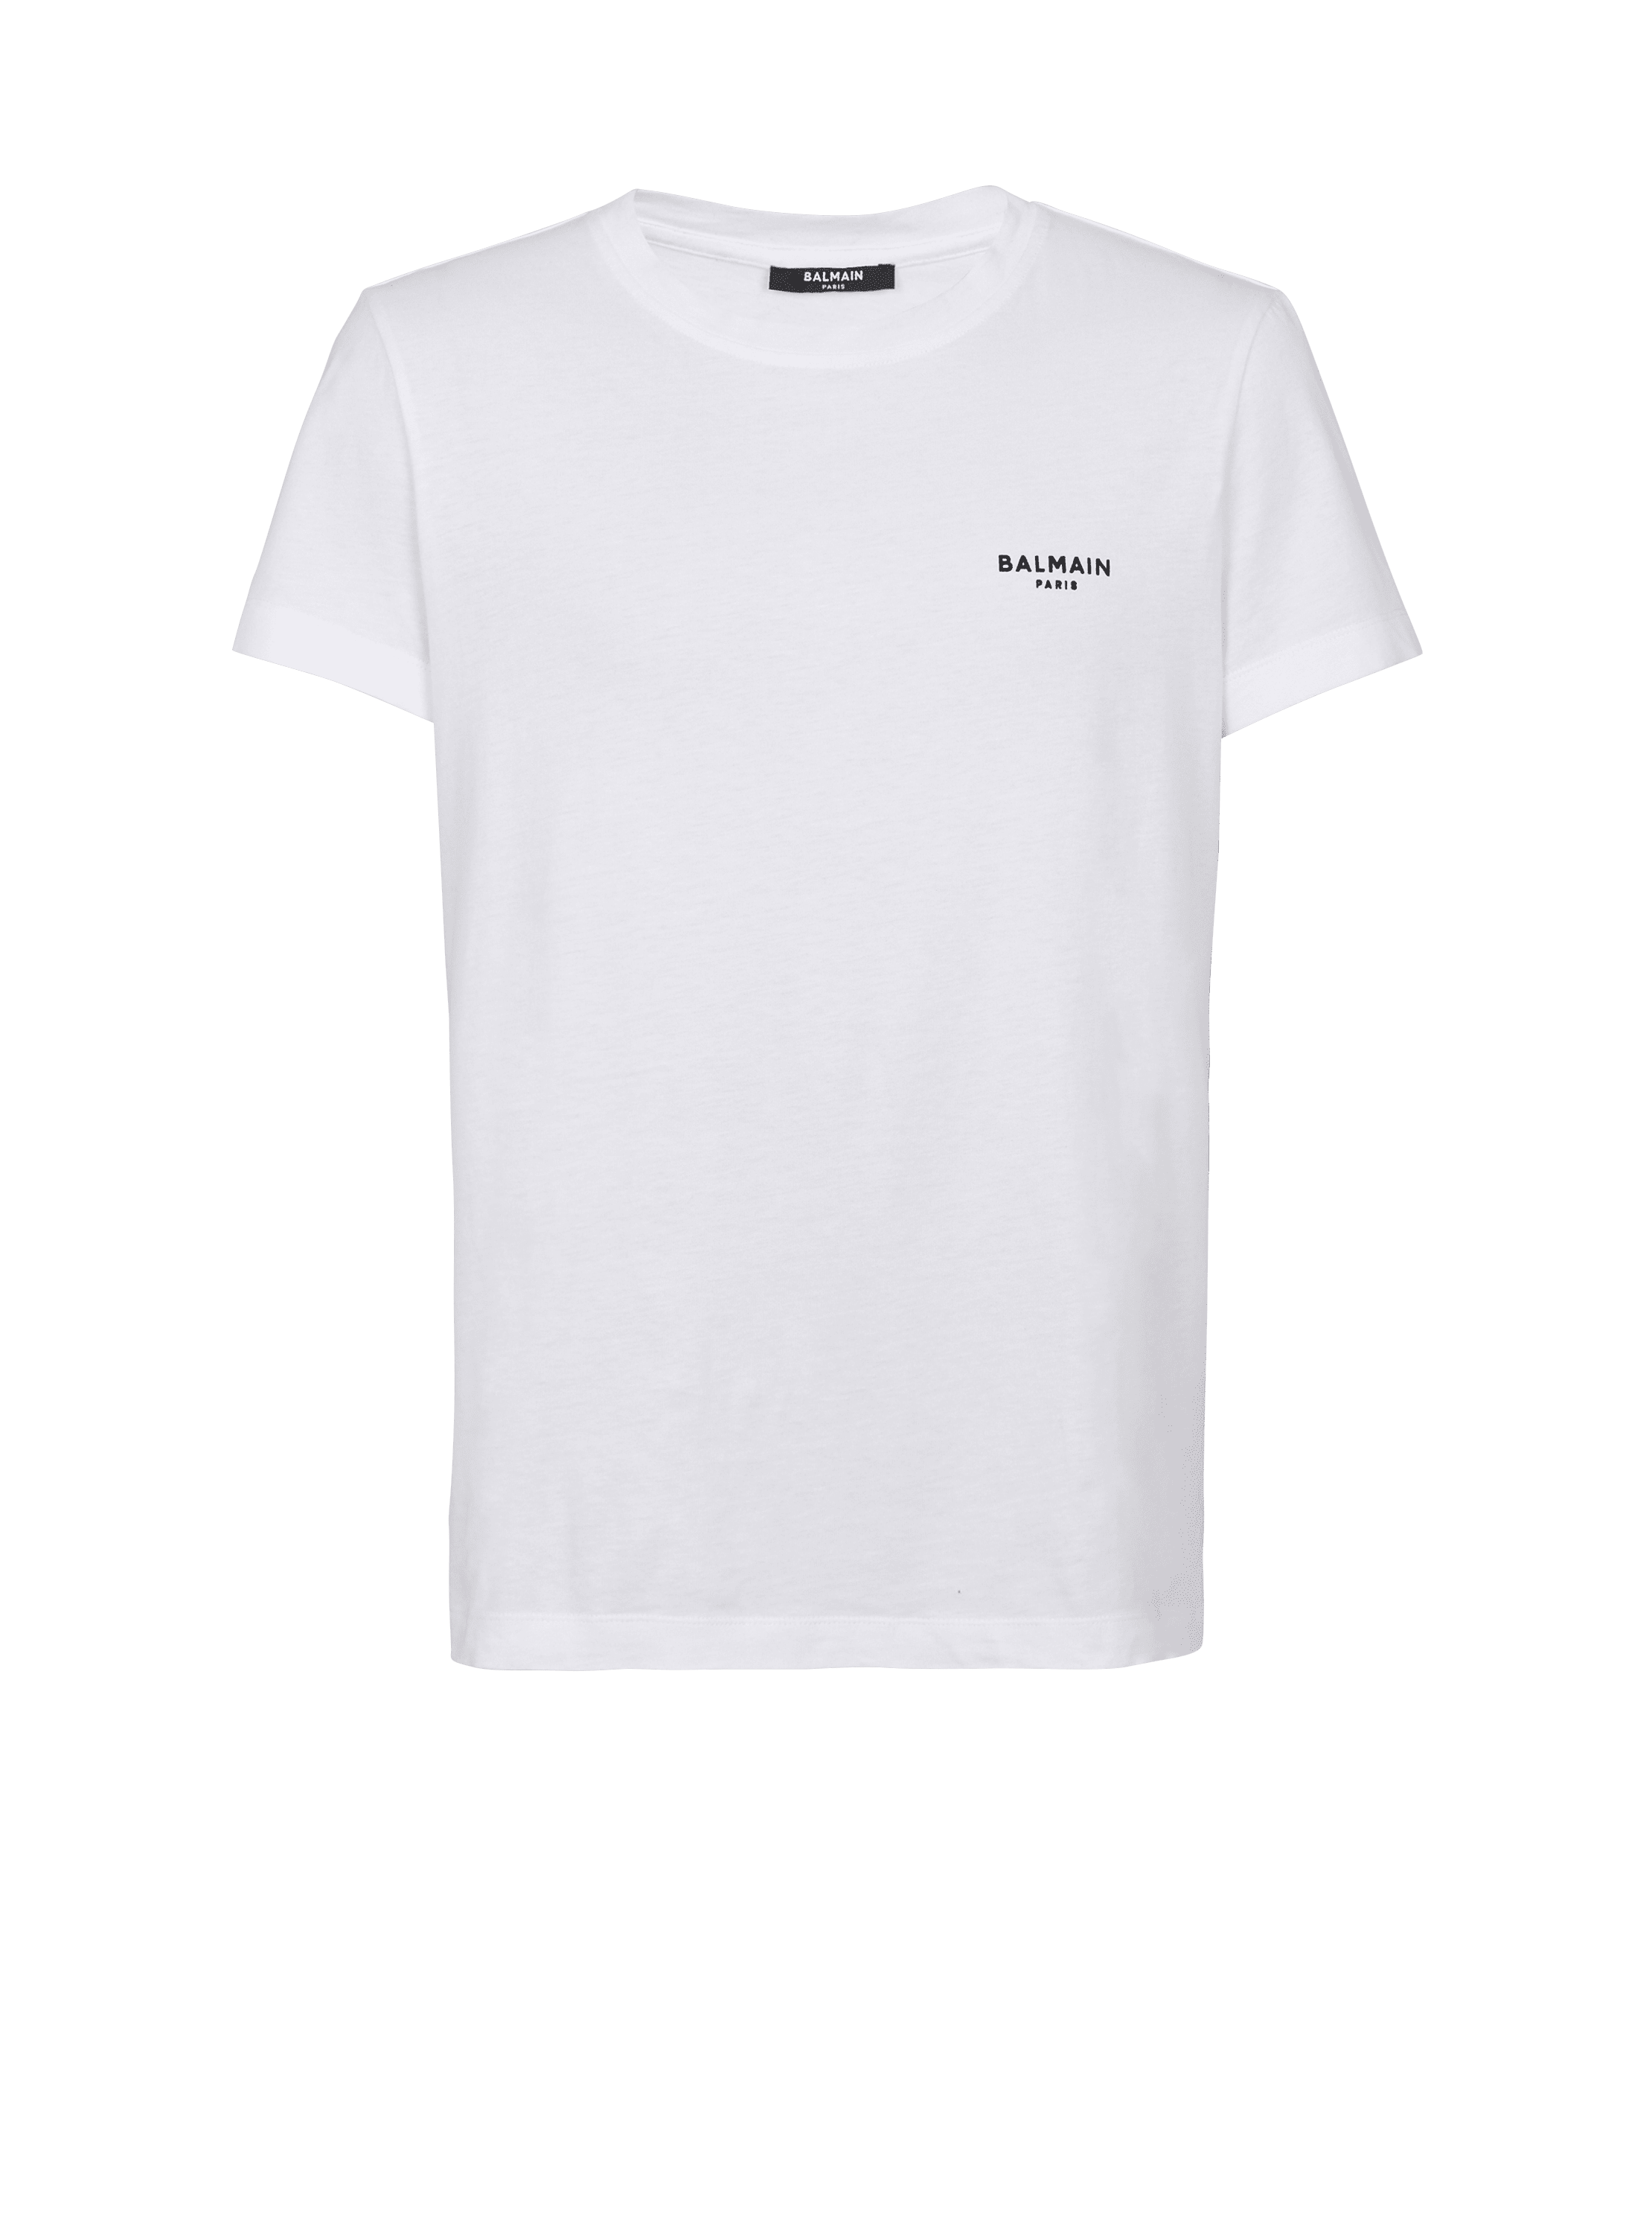 T-Shirt Balmain floccato, bianco, hi-res